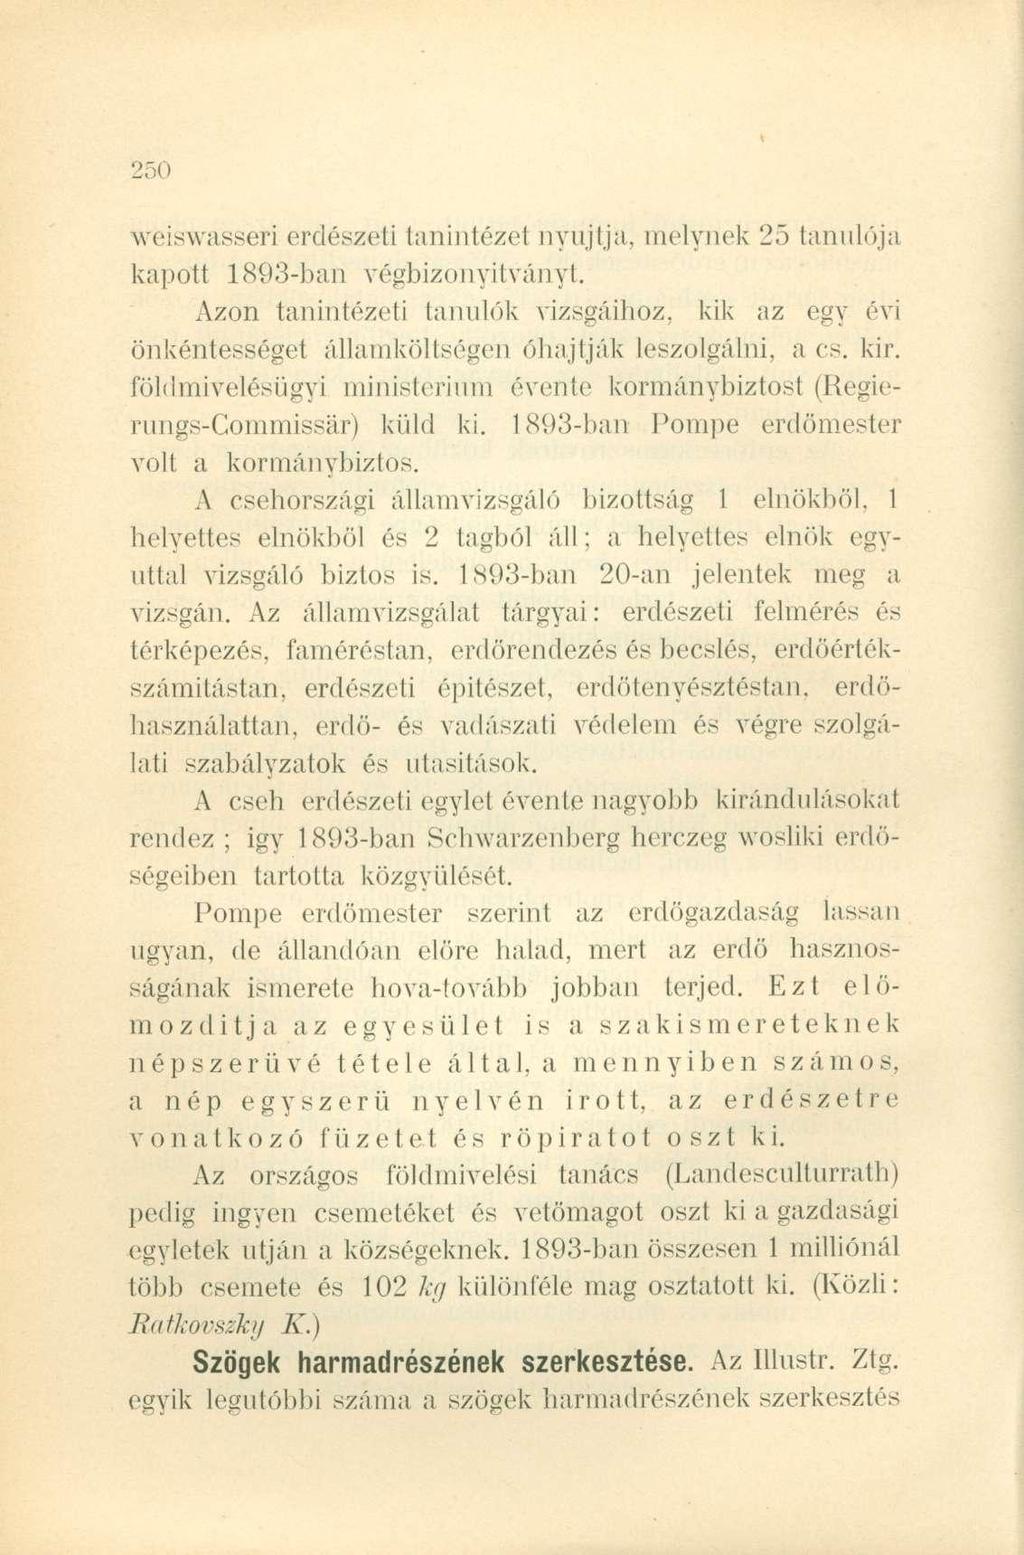 weiswasseri erdészeti tanintézet nyújtja, melynek 25 tanulója kapott 1893-ban végbizonyítványt.